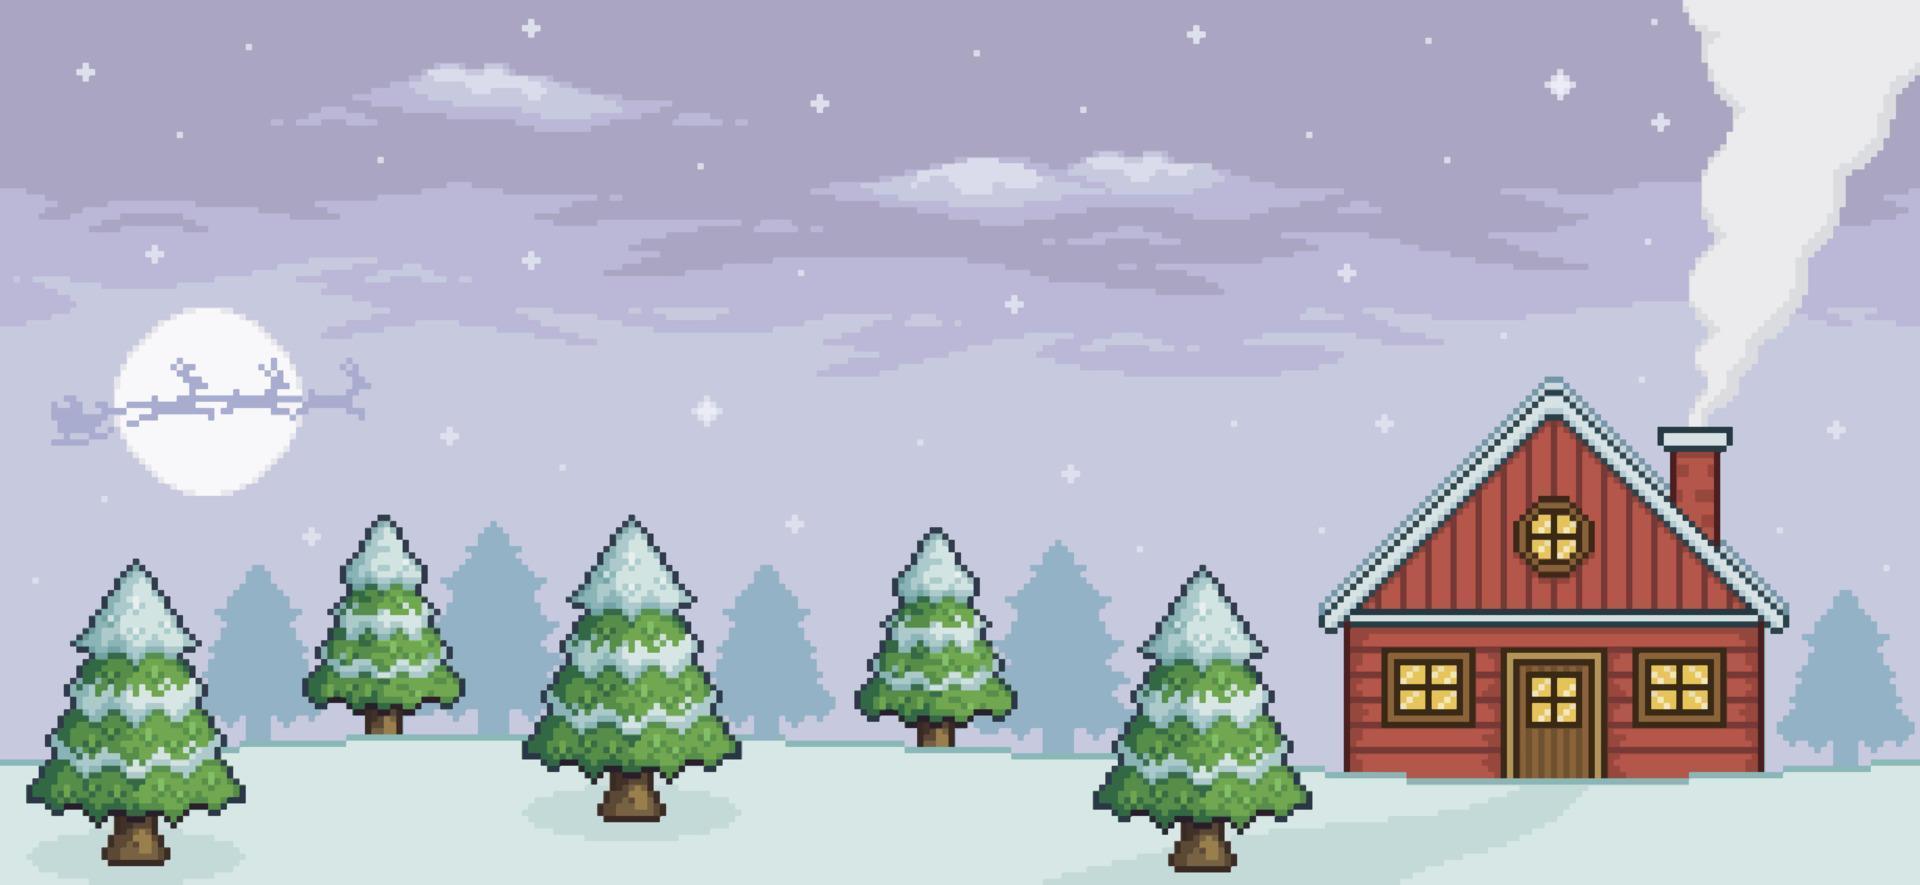 Pixelkunst-Weihnachtslandschaft mit rotem Haus, Kiefer, Schnee, Weihnachtsmann 8-Bit-Spielhintergrund vektor